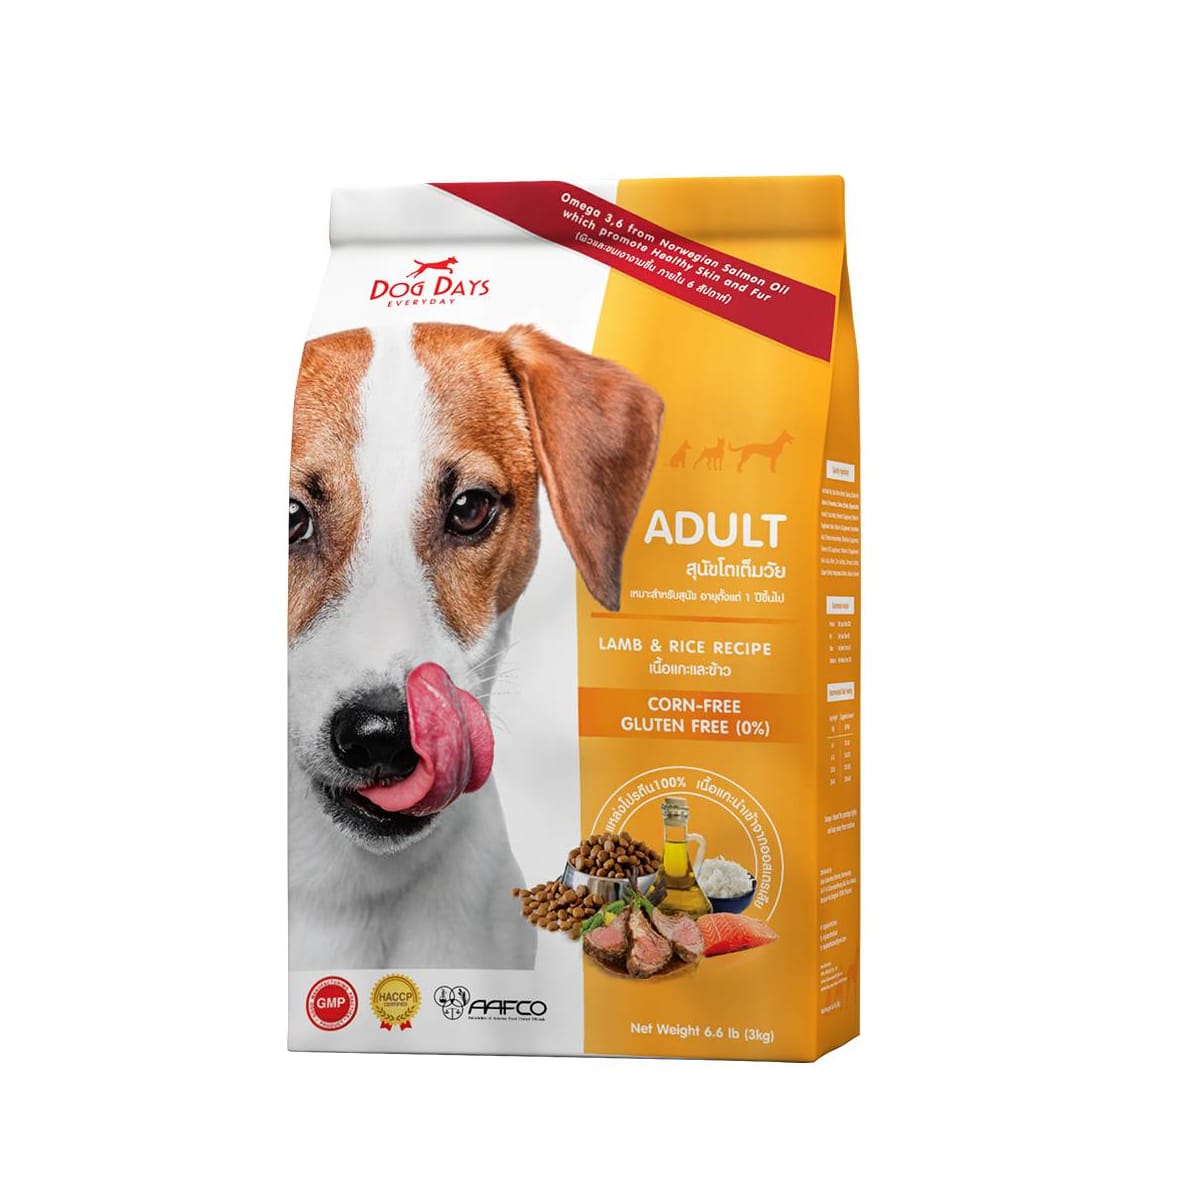 DogDays ด็อกเดย์ อาหารสุนัขแบบเม็ดสูตรแกะและข้าวสำหรับสุนัขโตทุกสายพันธุ์